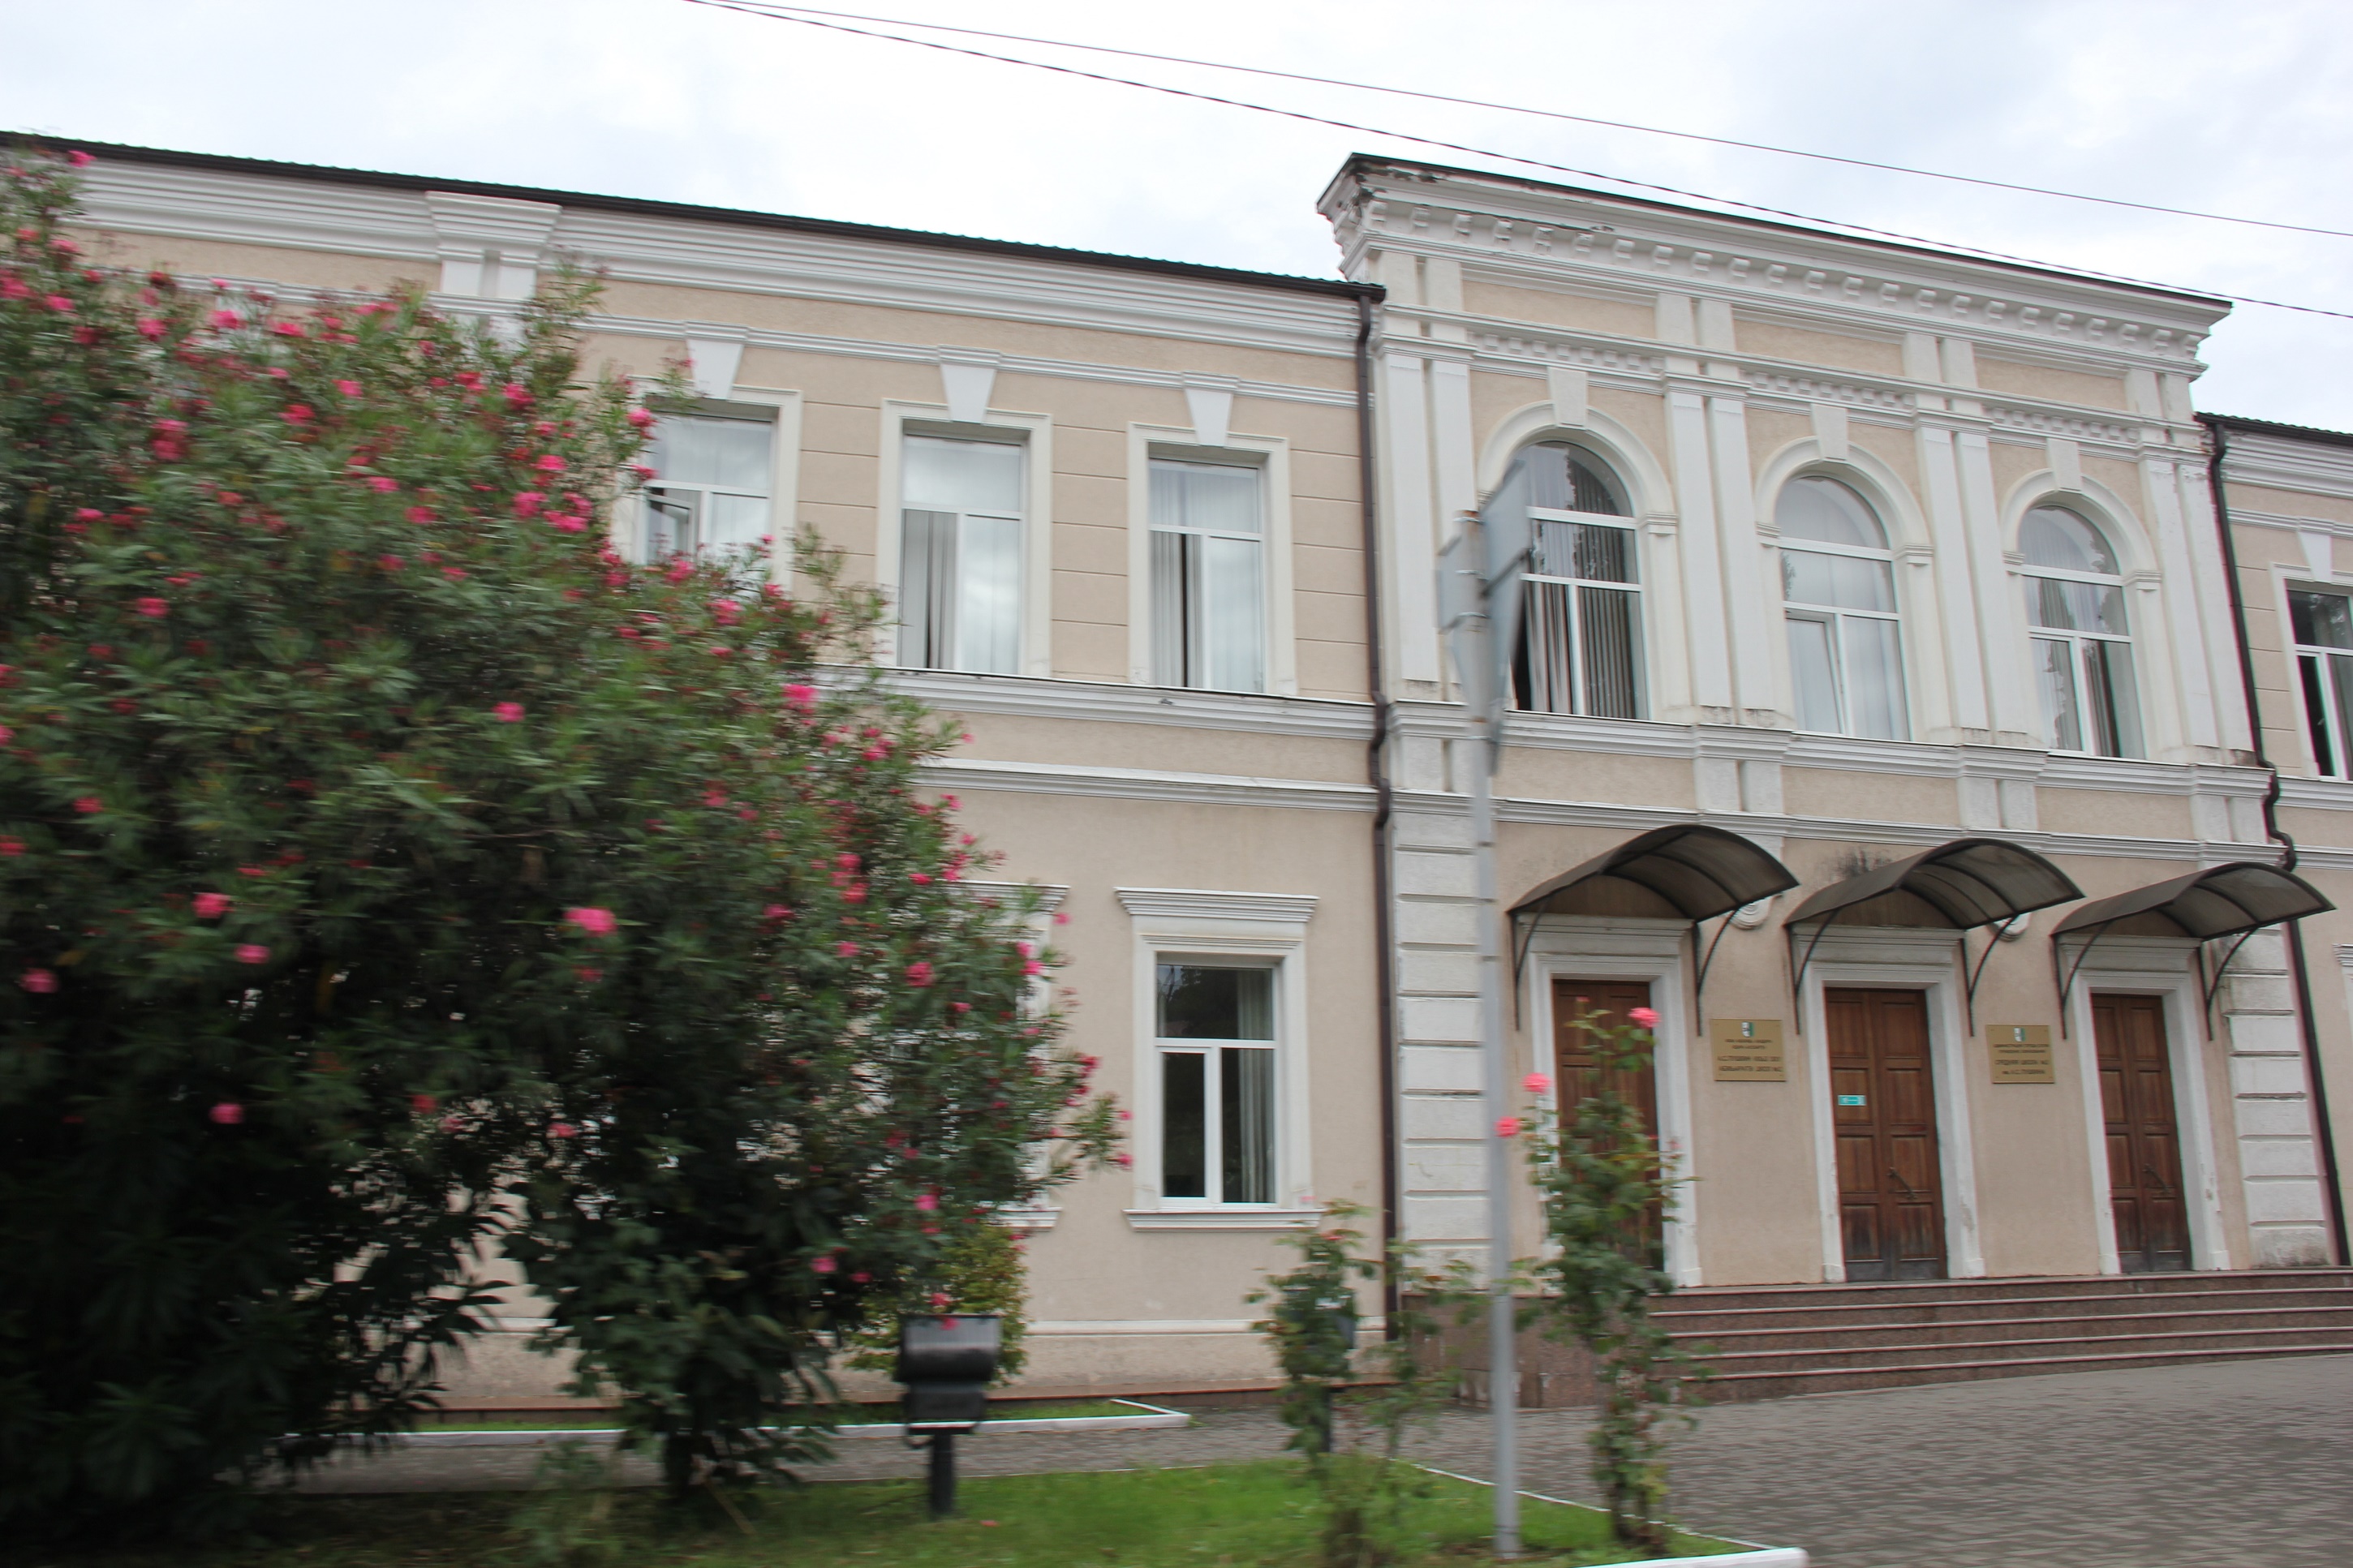 Pushkin Secondary School No. 2 Sokhumi